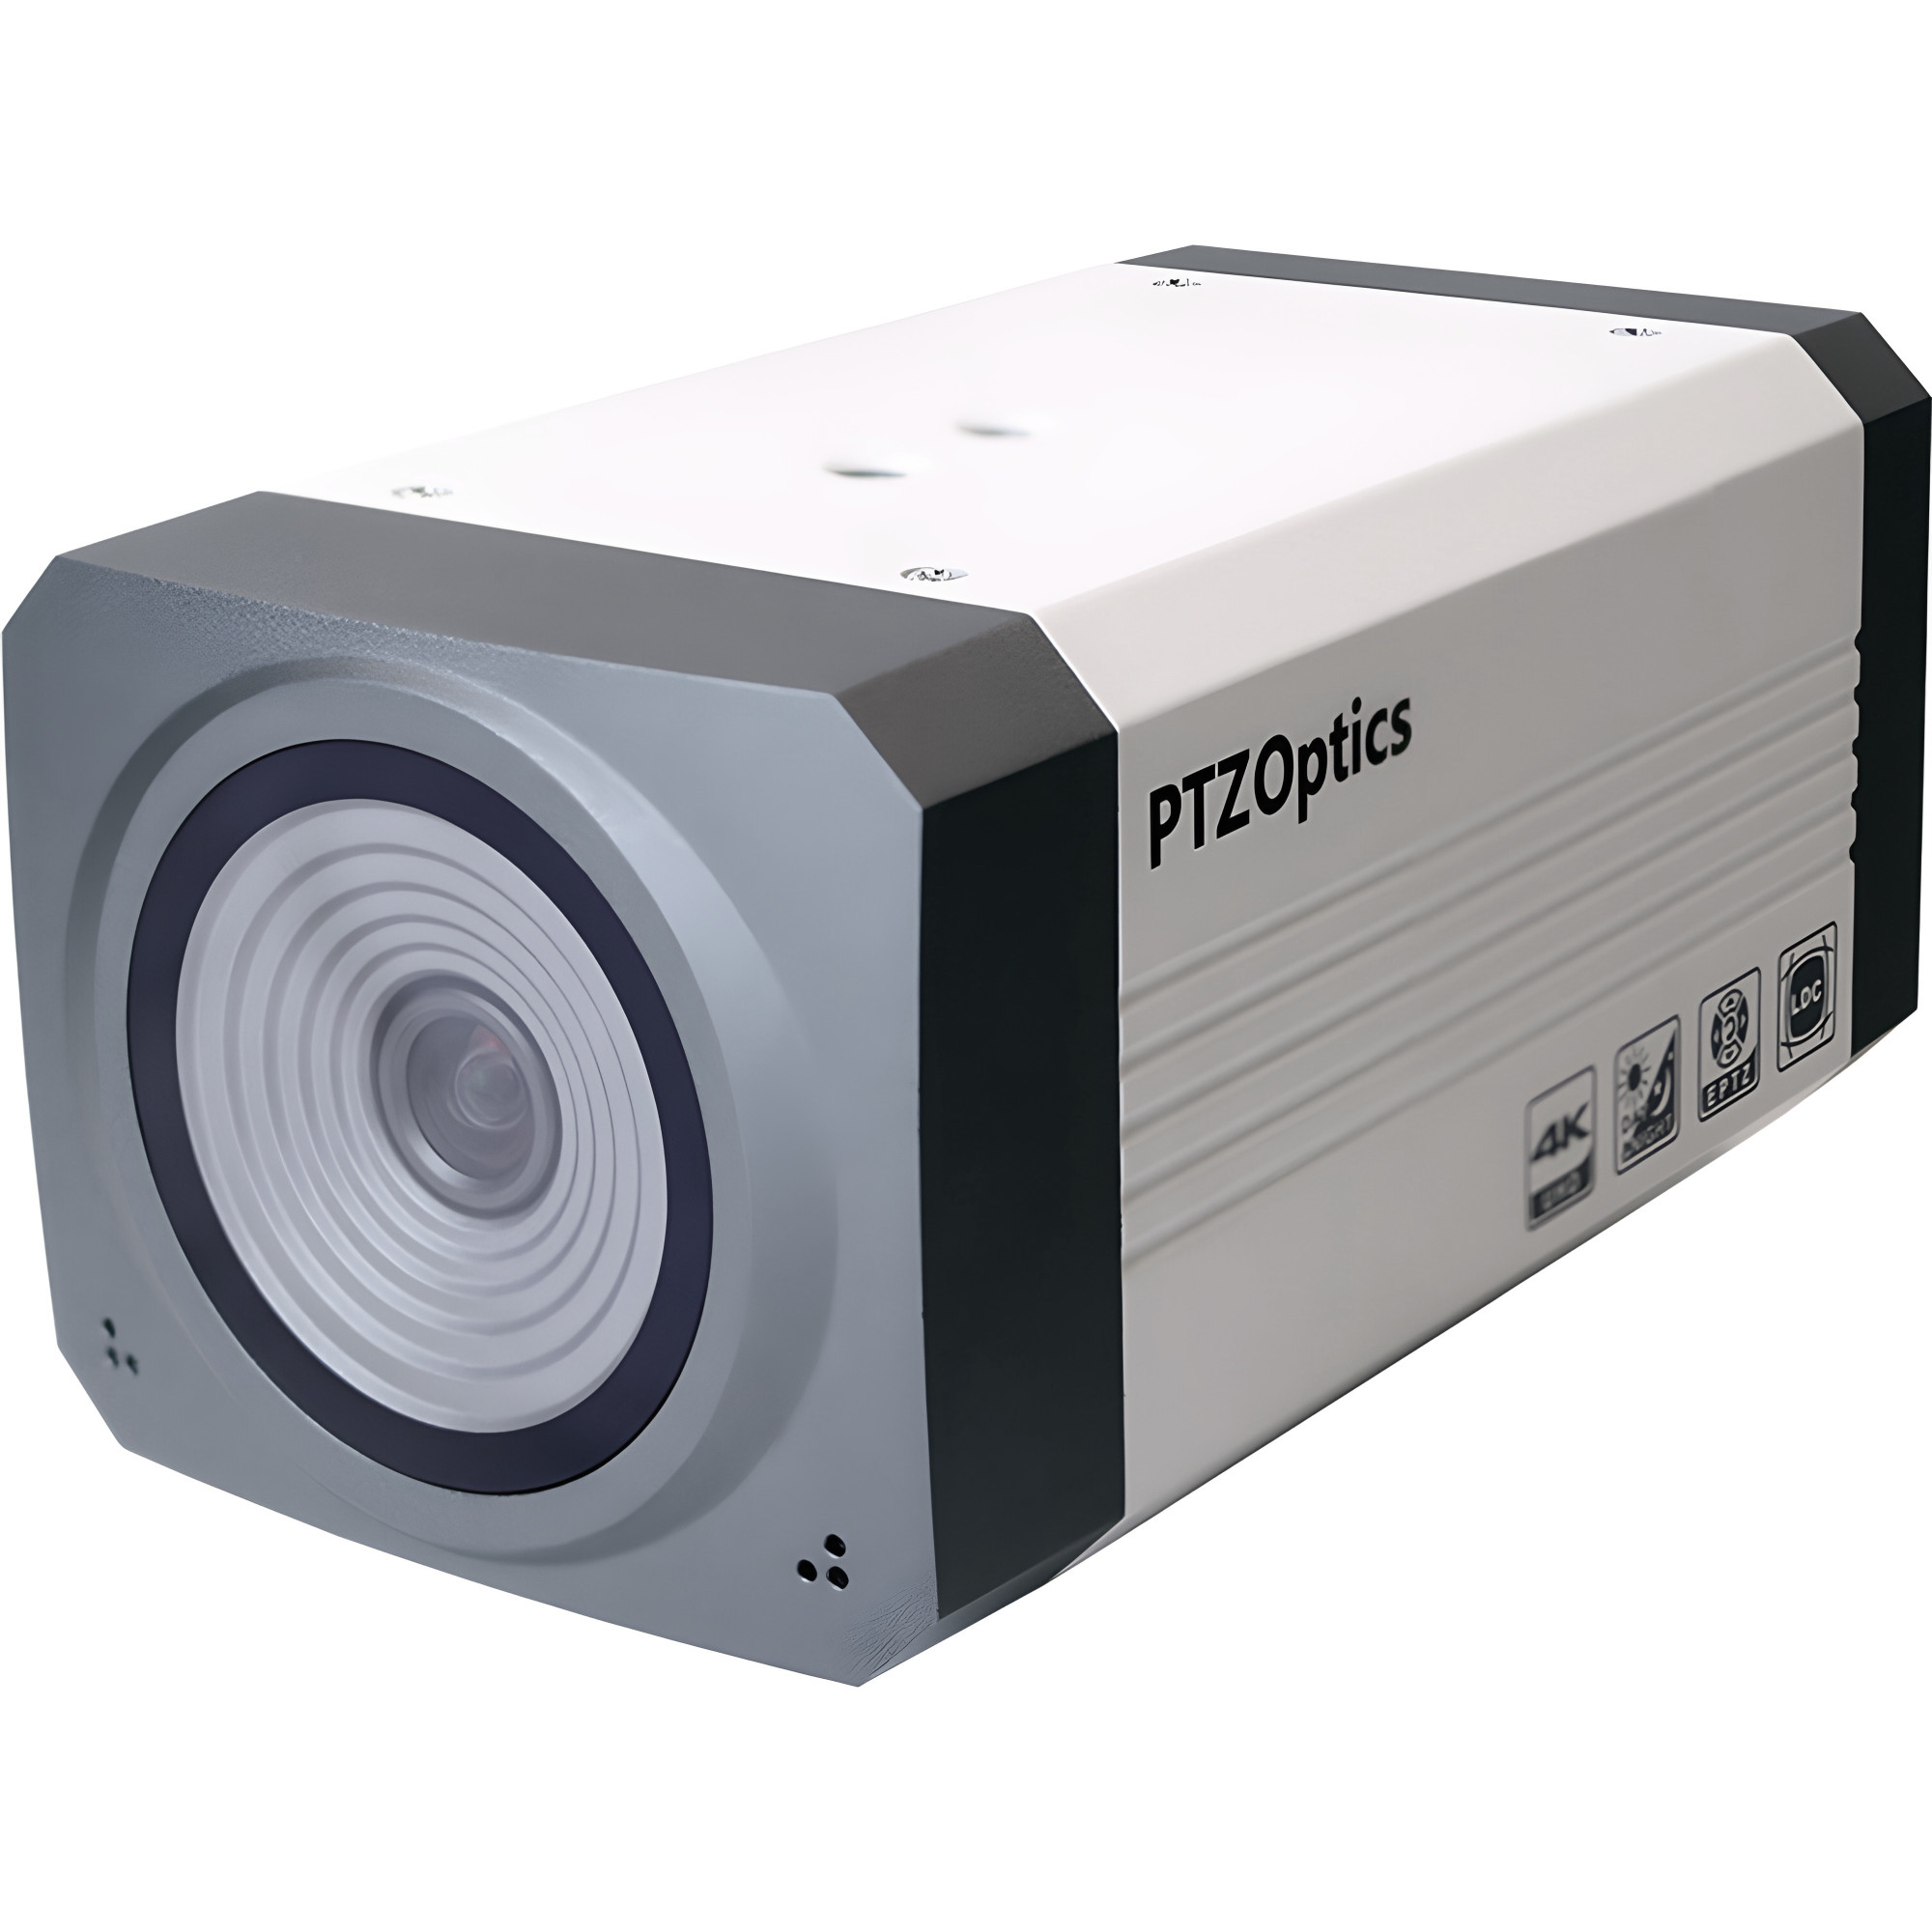 PTZOptics EPTZ ZCAM | 2x 3G-SDI E-PTZ Box Camera, IP Streaming, PoE